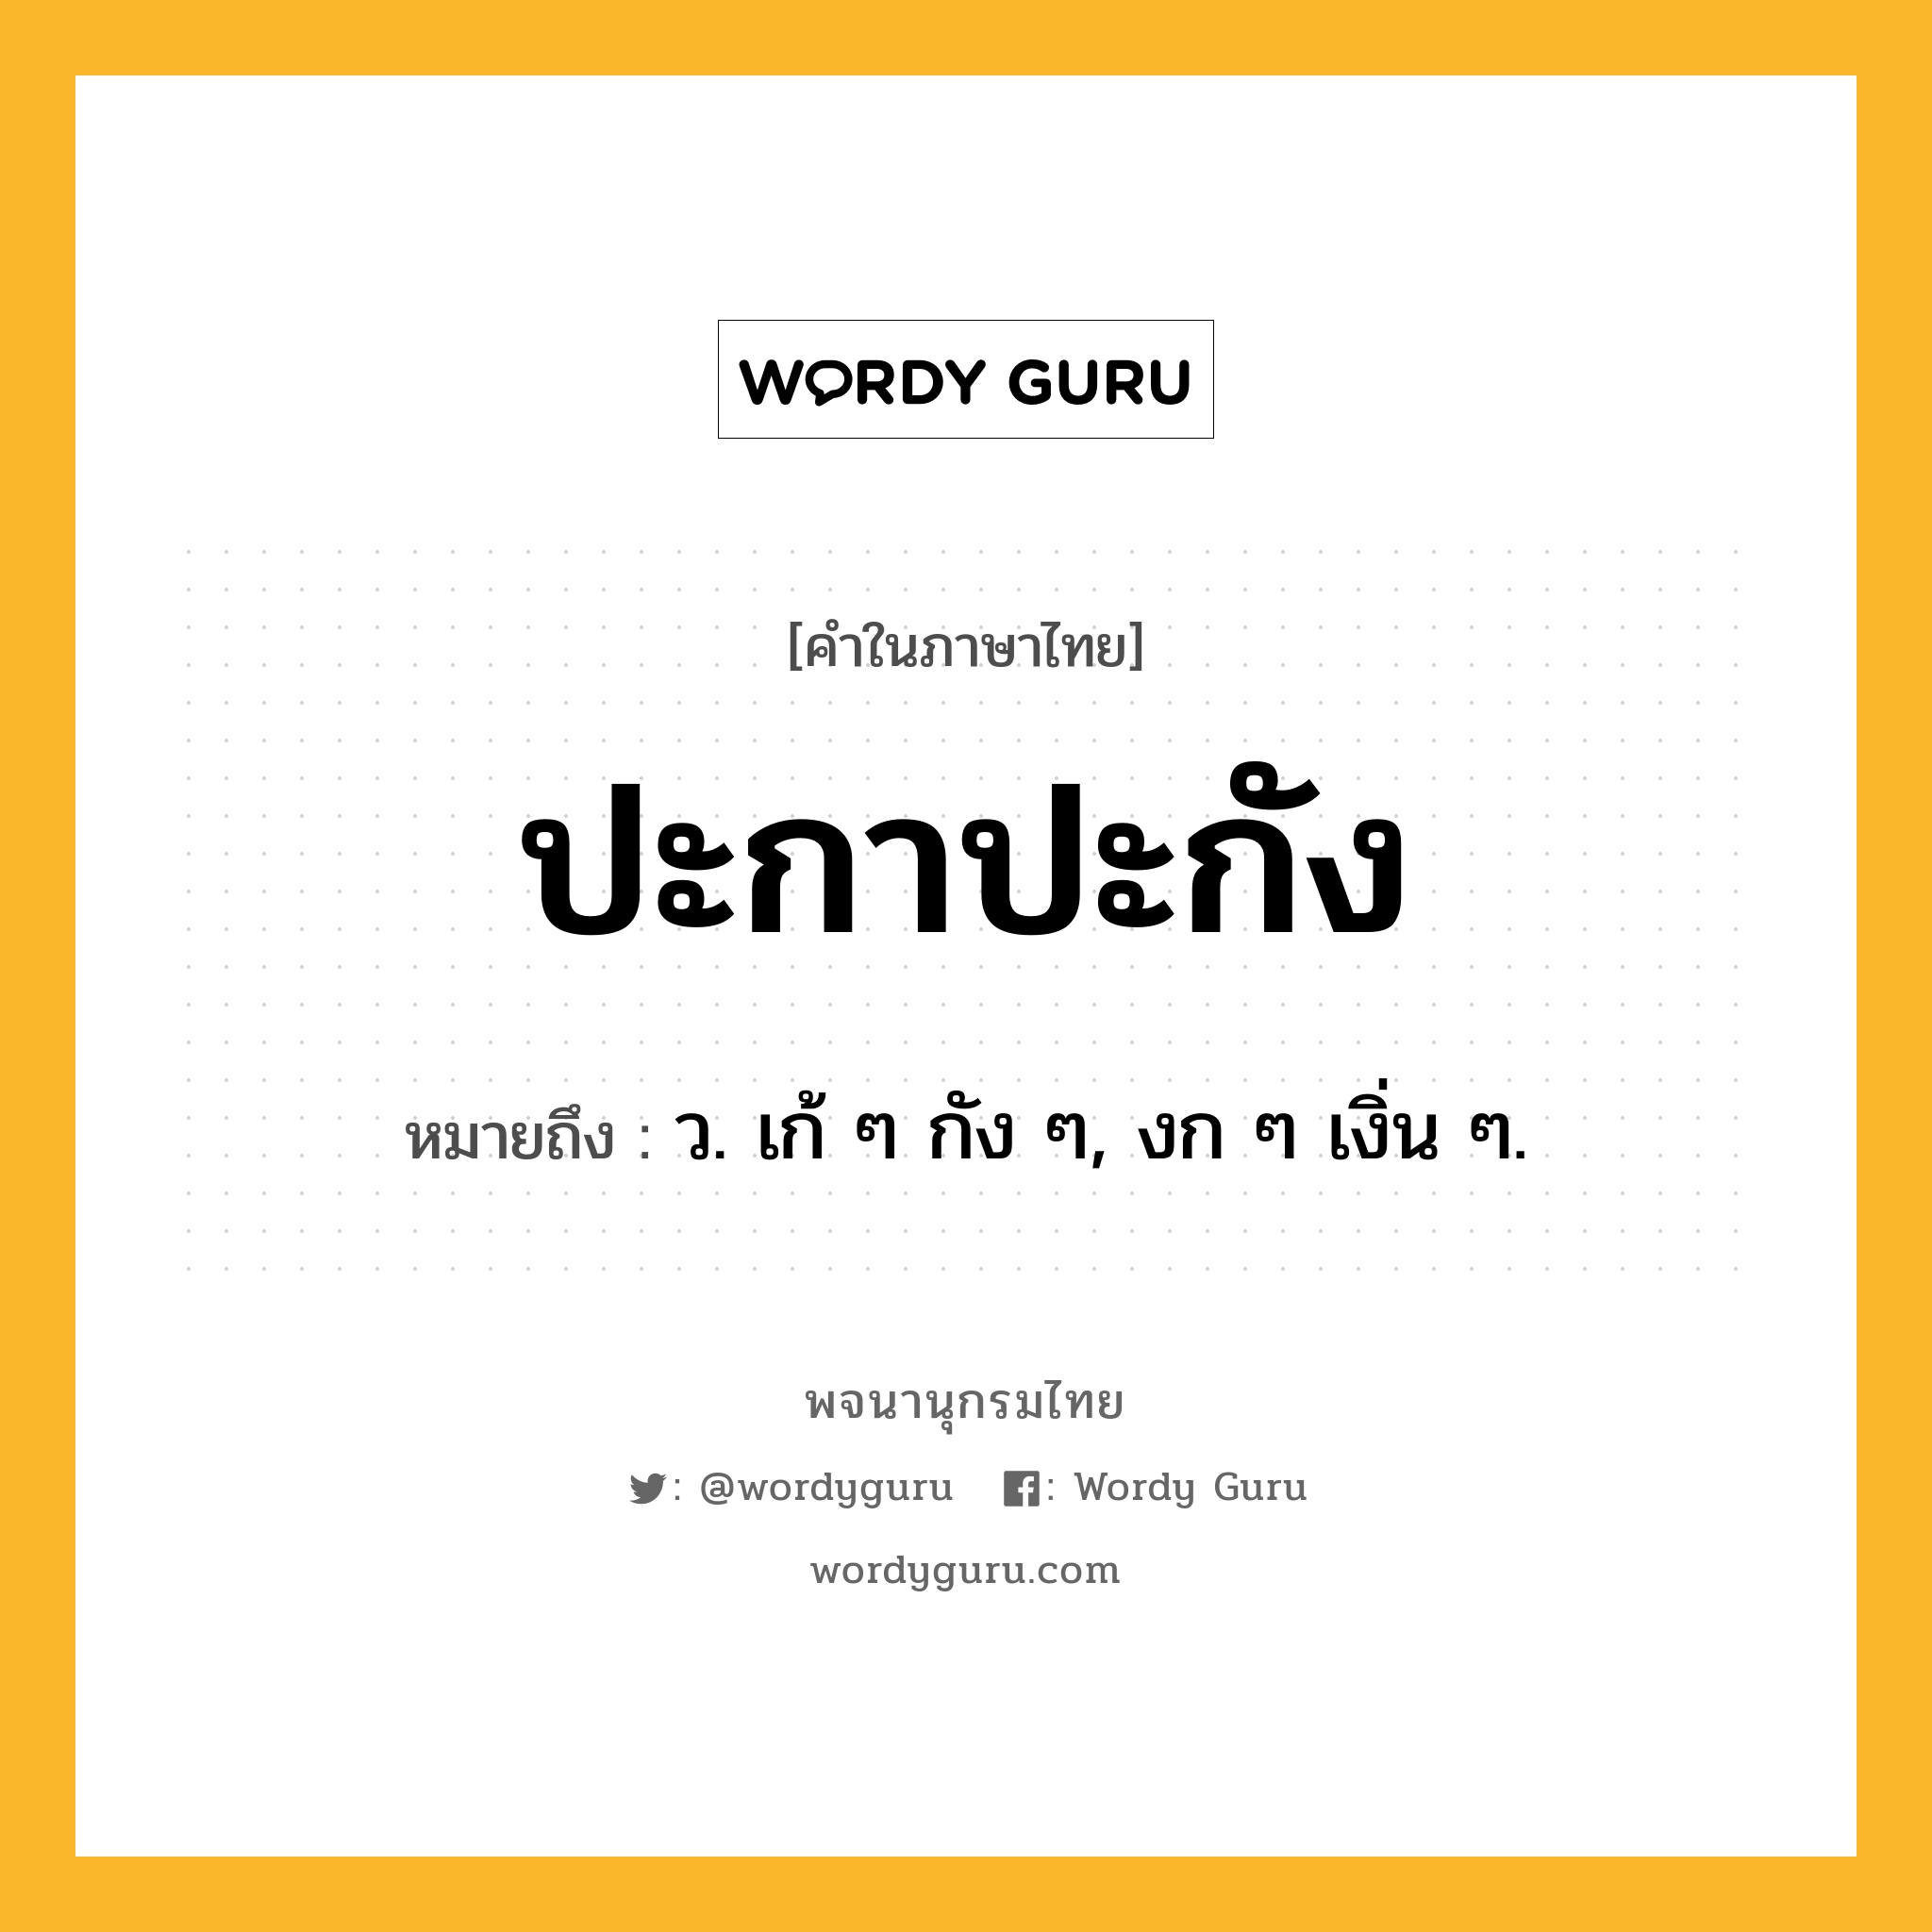 ปะกาปะกัง ความหมาย หมายถึงอะไร?, คำในภาษาไทย ปะกาปะกัง หมายถึง ว. เก้ ๆ กัง ๆ, งก ๆ เงิ่น ๆ.